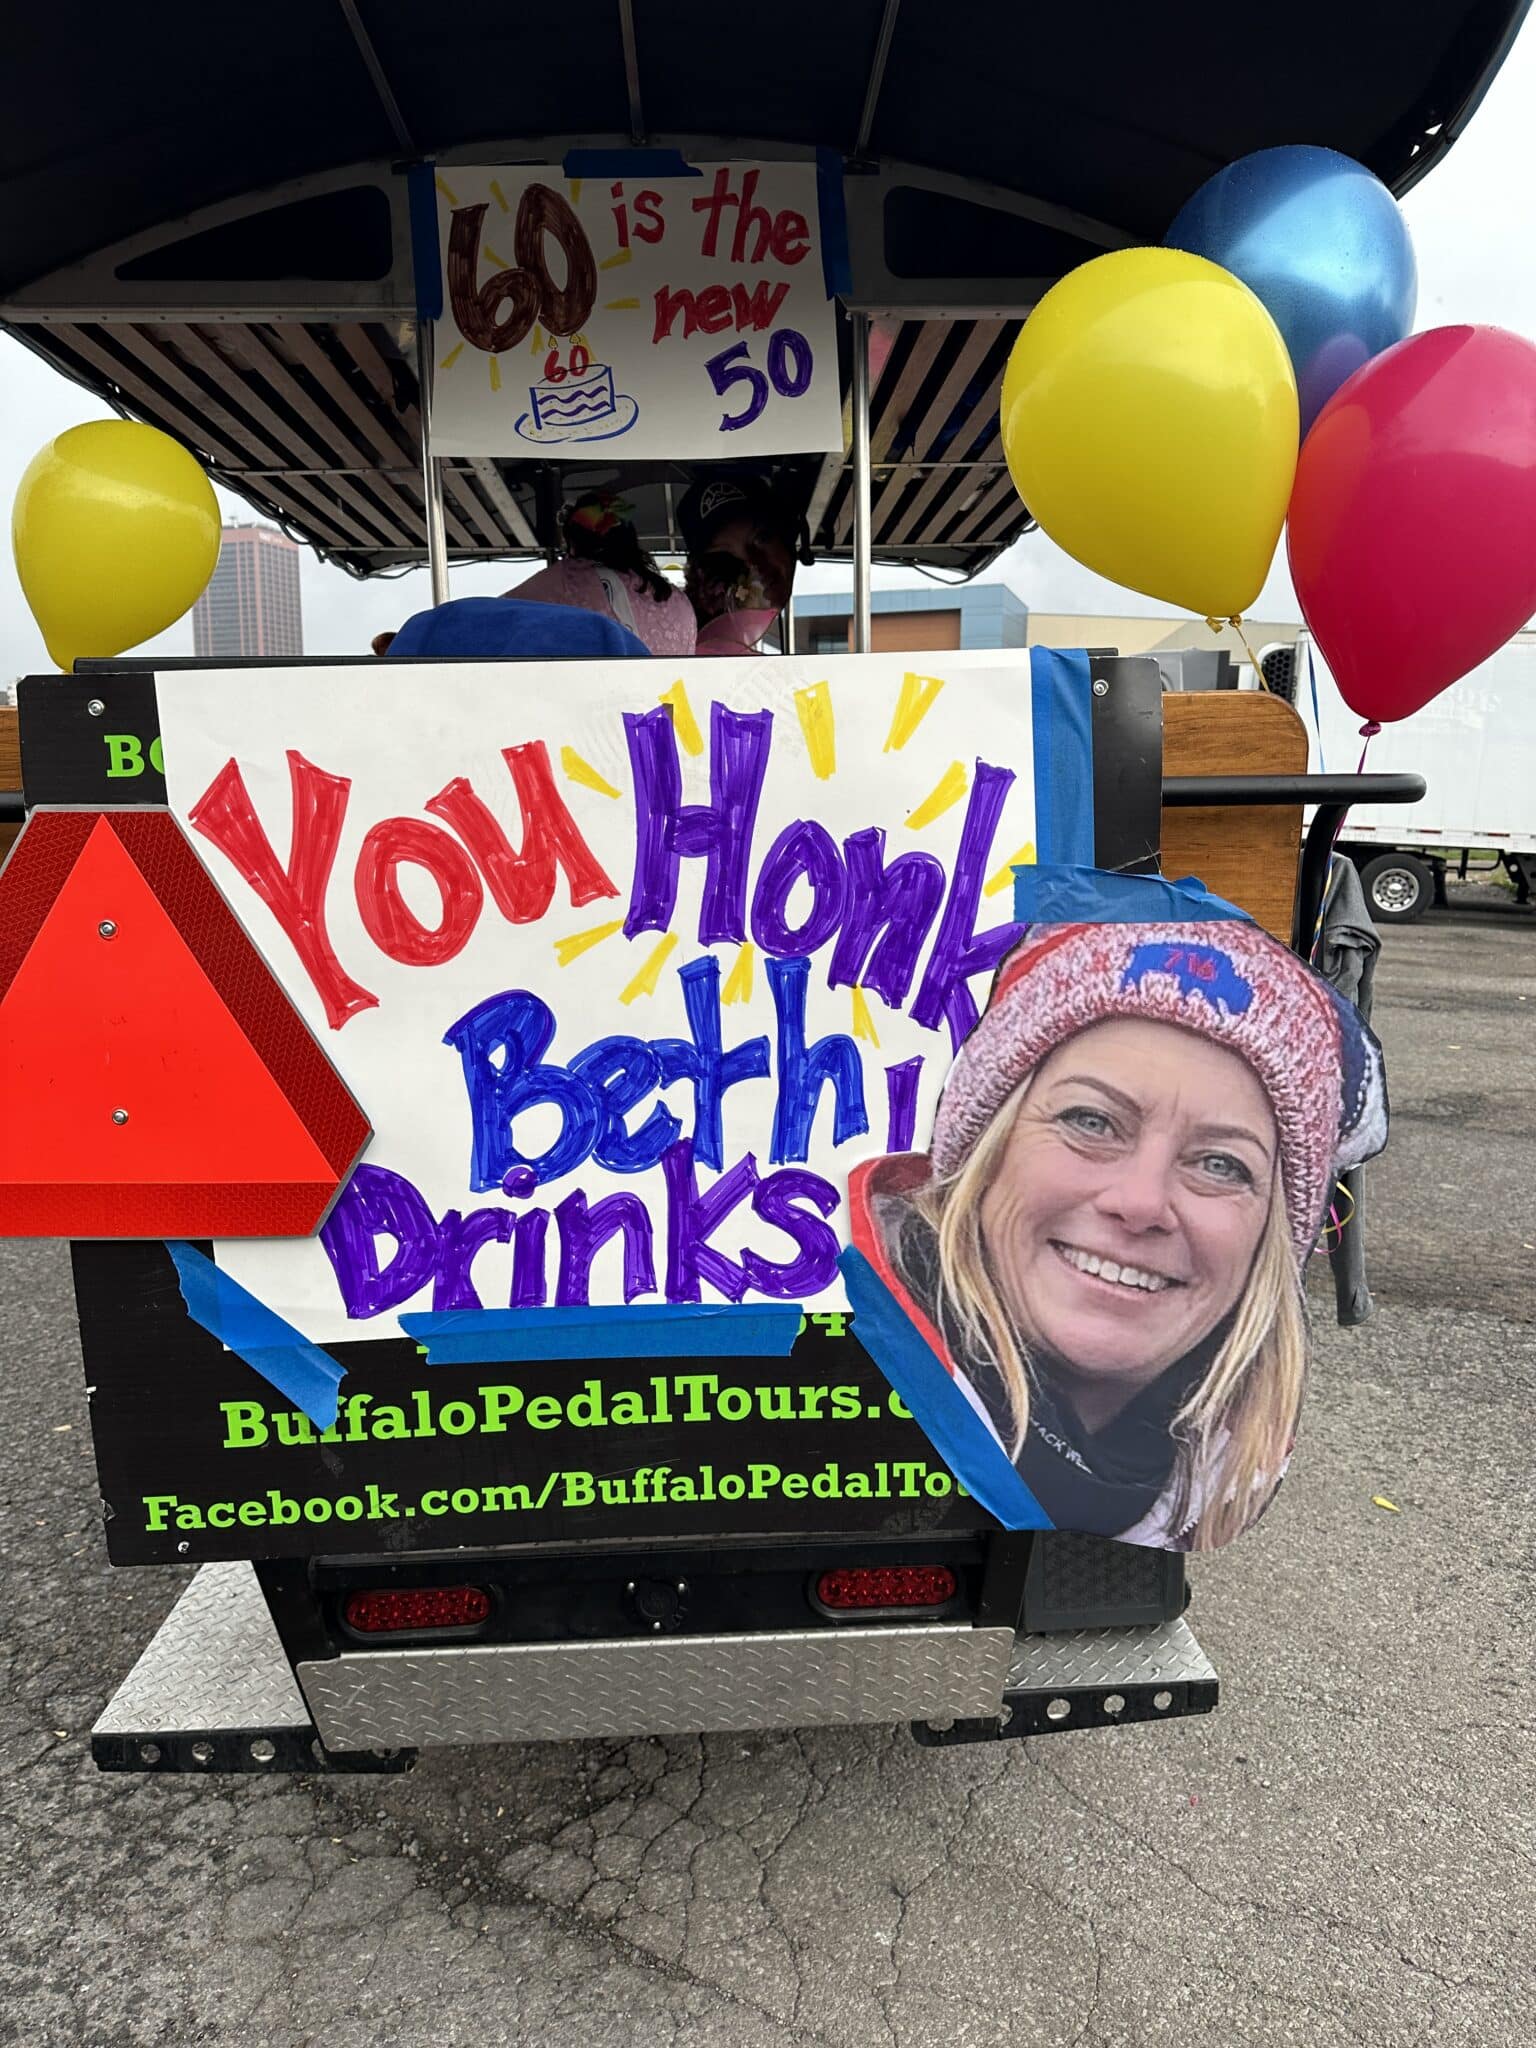 2. Adult Birthday Party Ideas in Buffalo, NY - Buffalo Pedal Tours